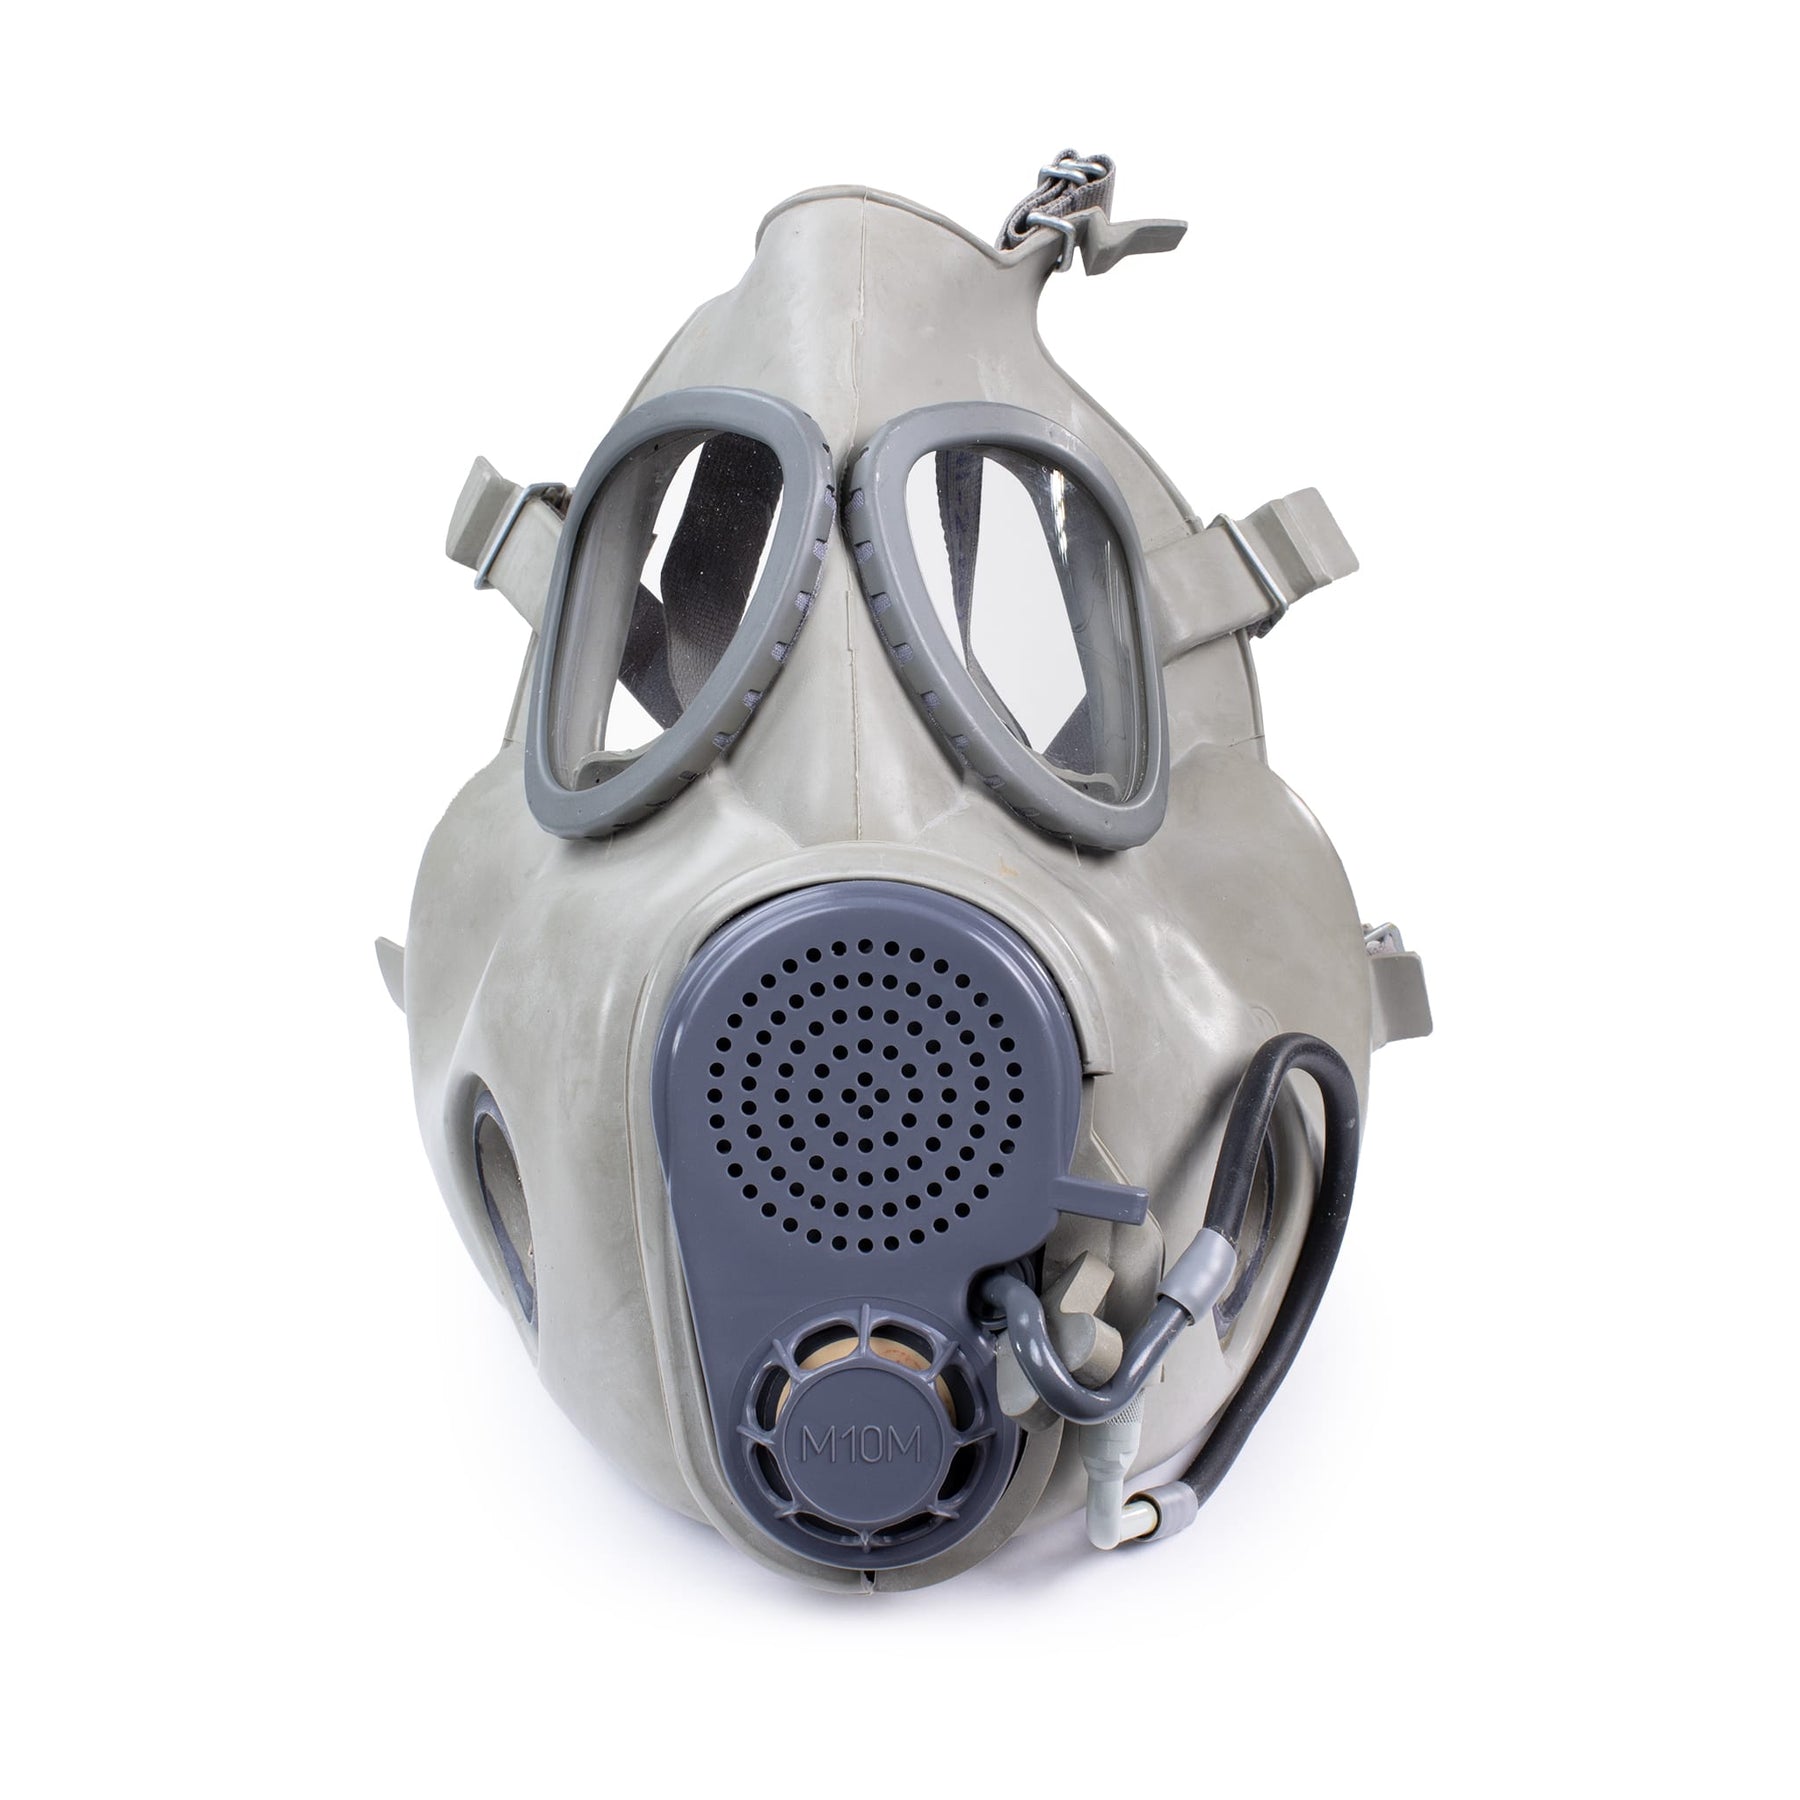 tykkelse Alternativt forslag Almindeligt Czech M10M Gas Mask – KommandoStore